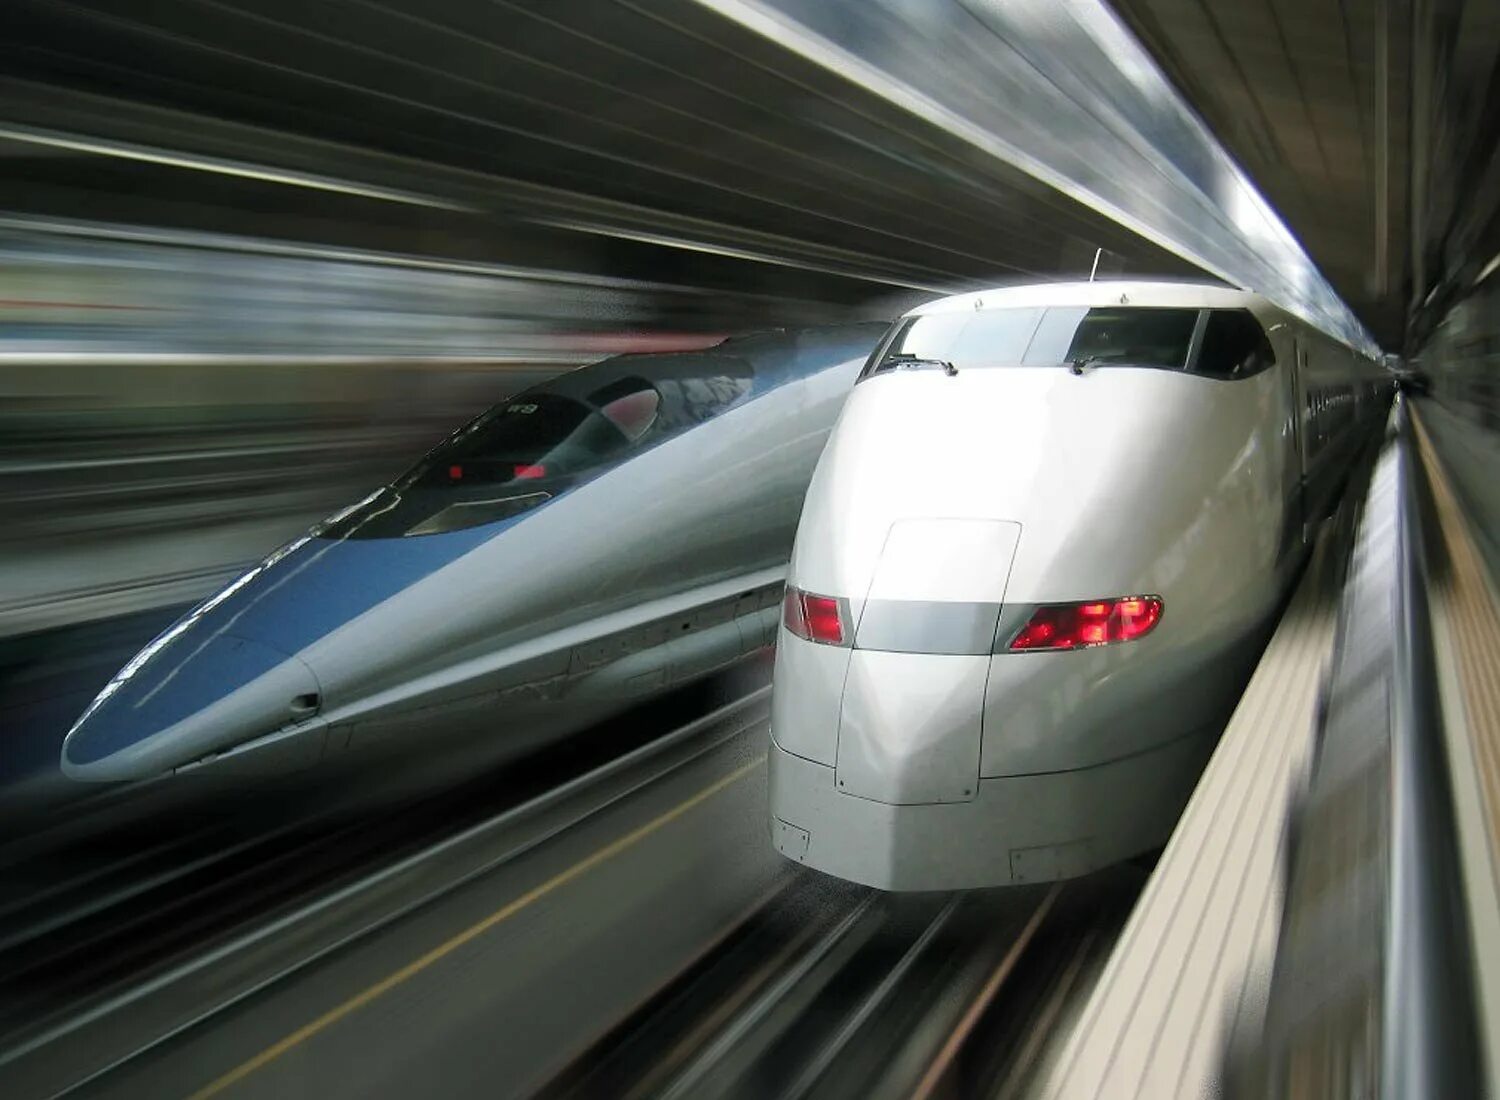 Скорость скорого поезда. Самый быстрый поезд в мире Shinkansen. Синкансэн на магнитной подушке. Синкансен скорость поезда. Маглев и Сапсан.